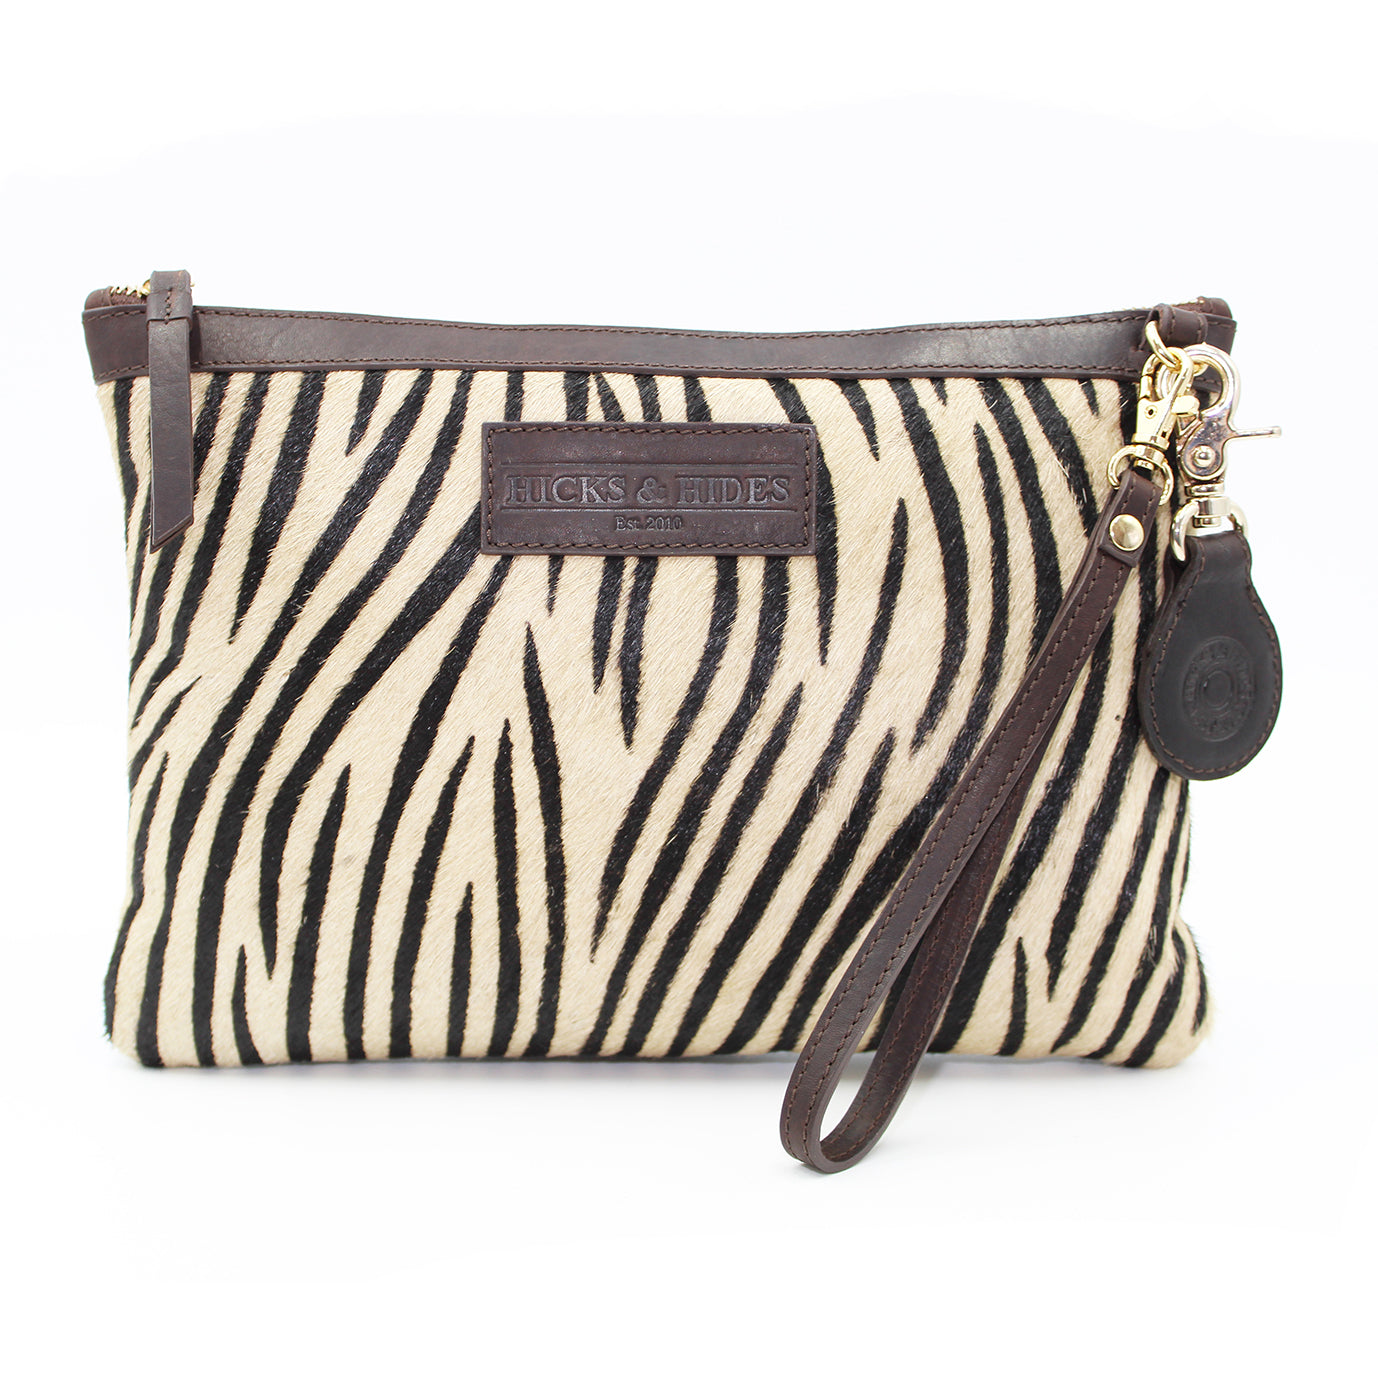 Zebra Shoulder and Clutch Bag